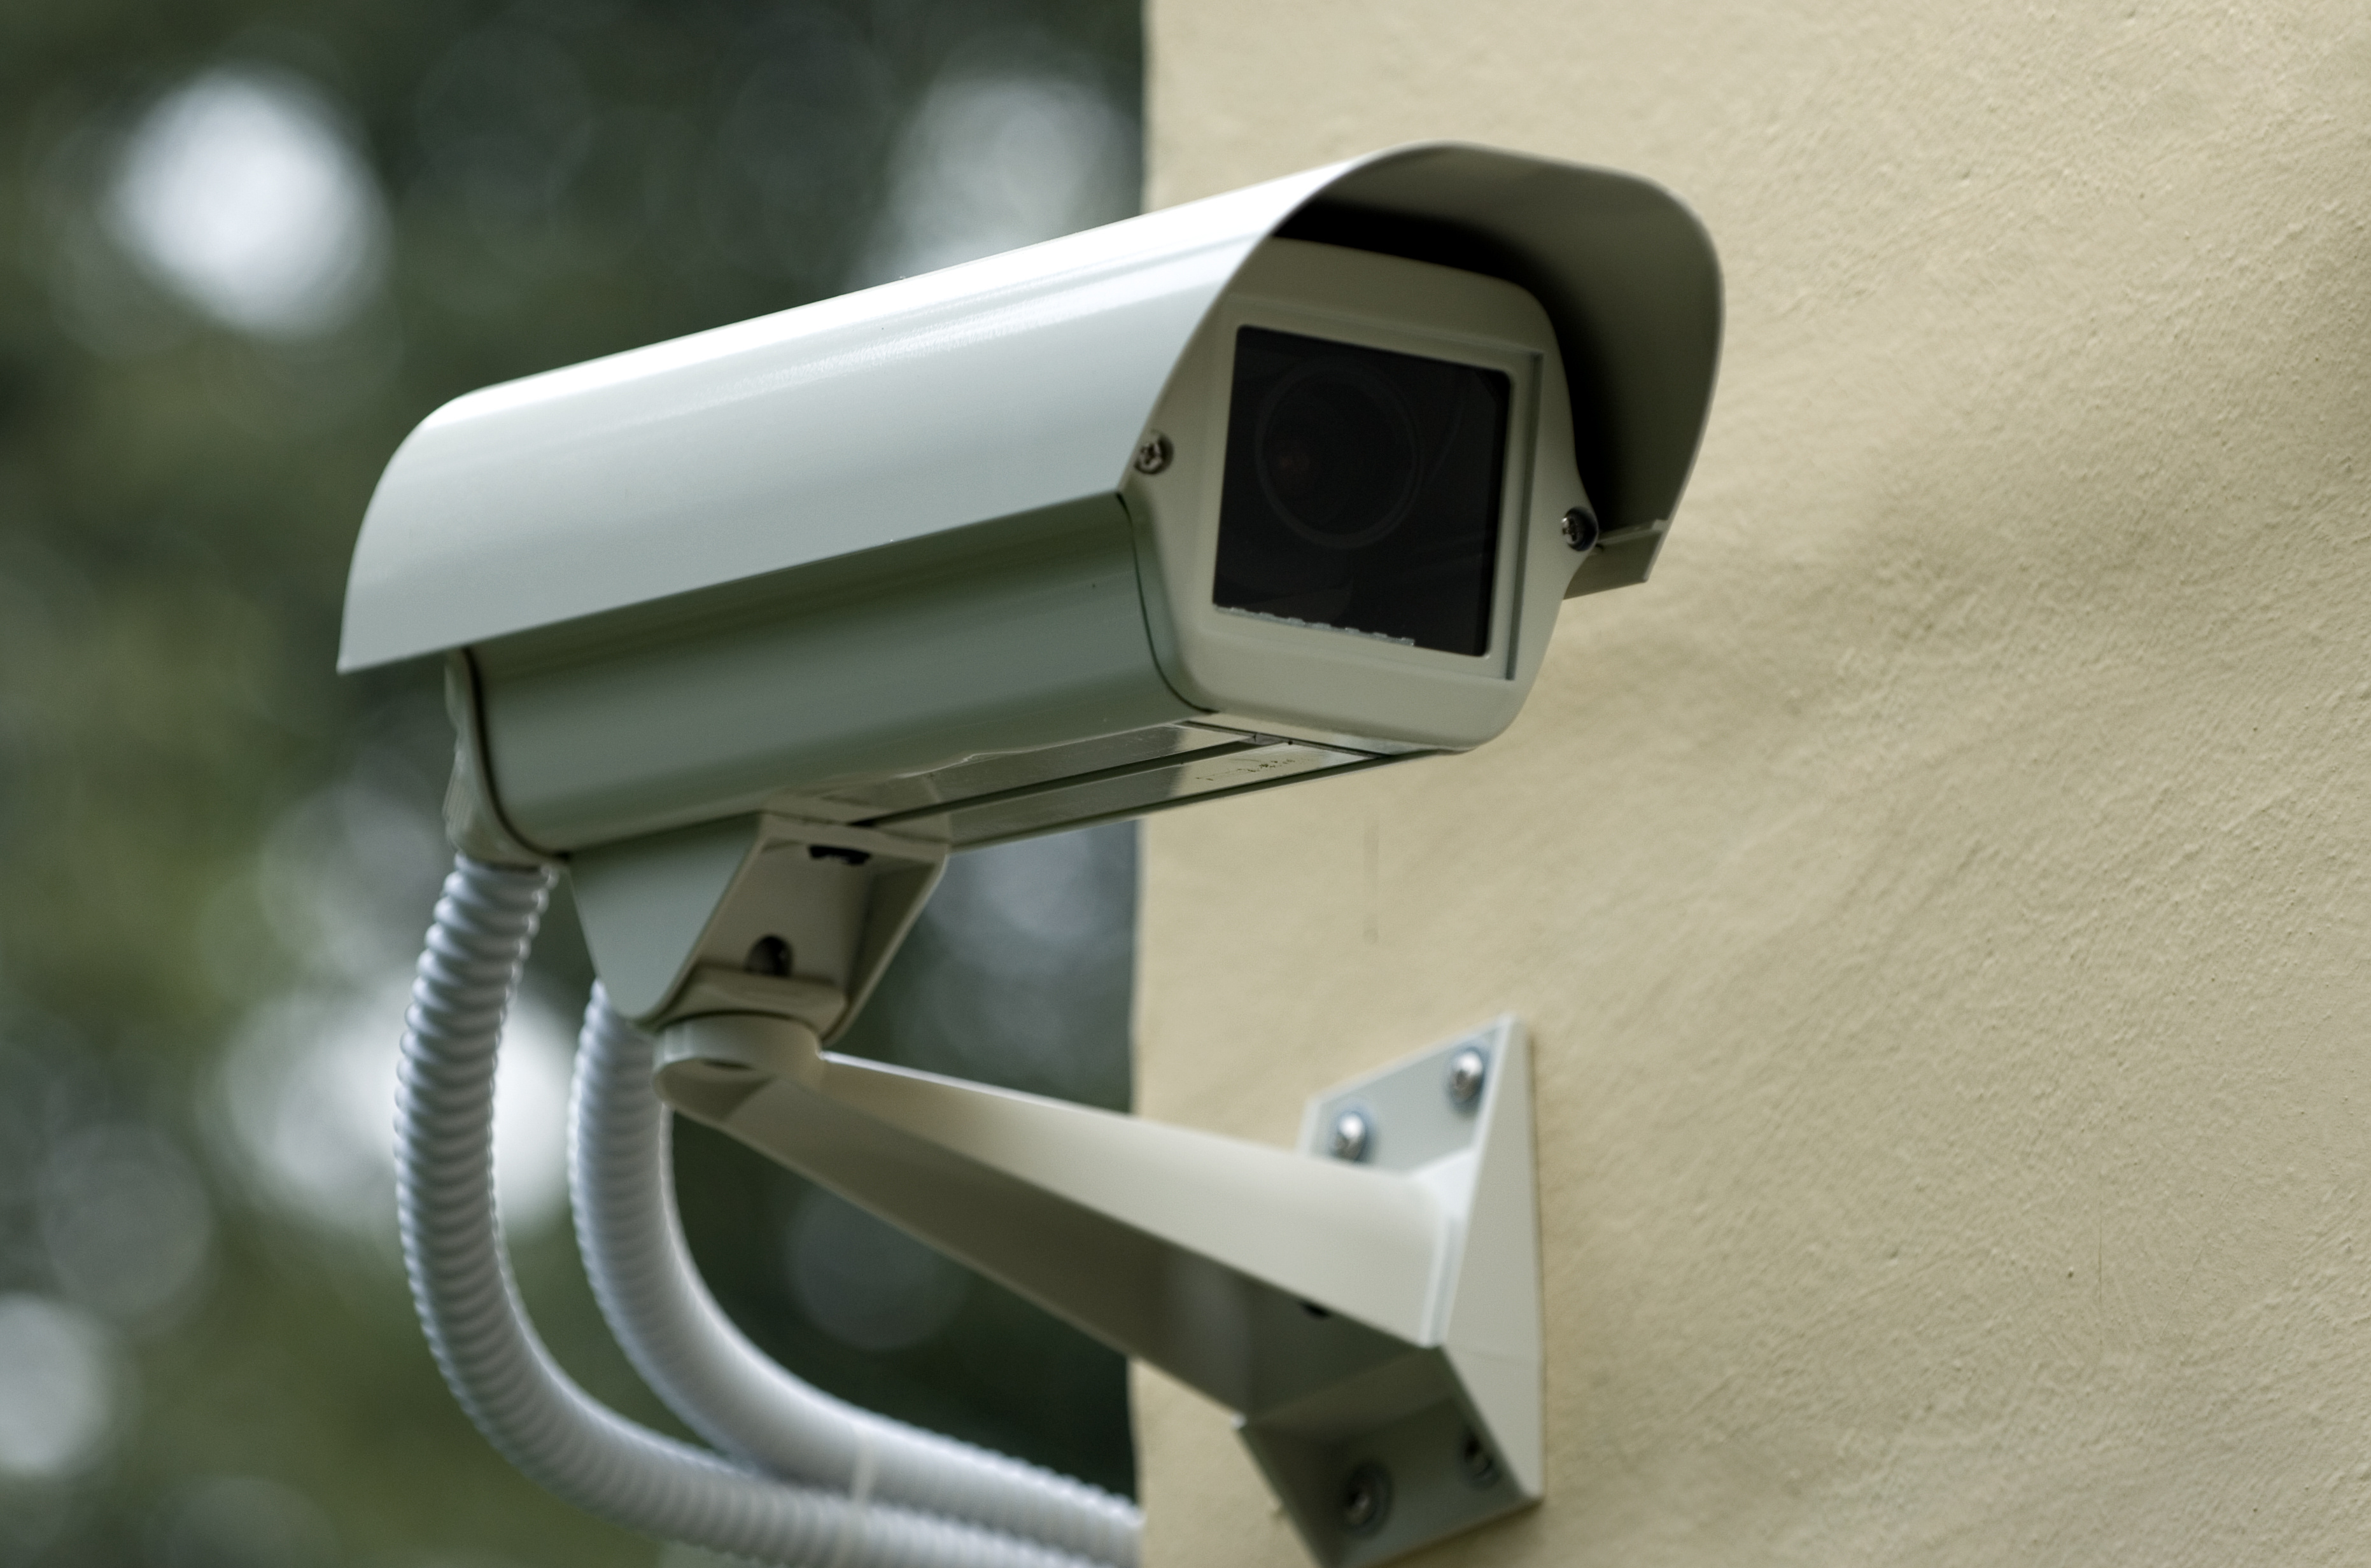 types of spy cctv camera 650tvl 1/3" sony exview cctv surveillance